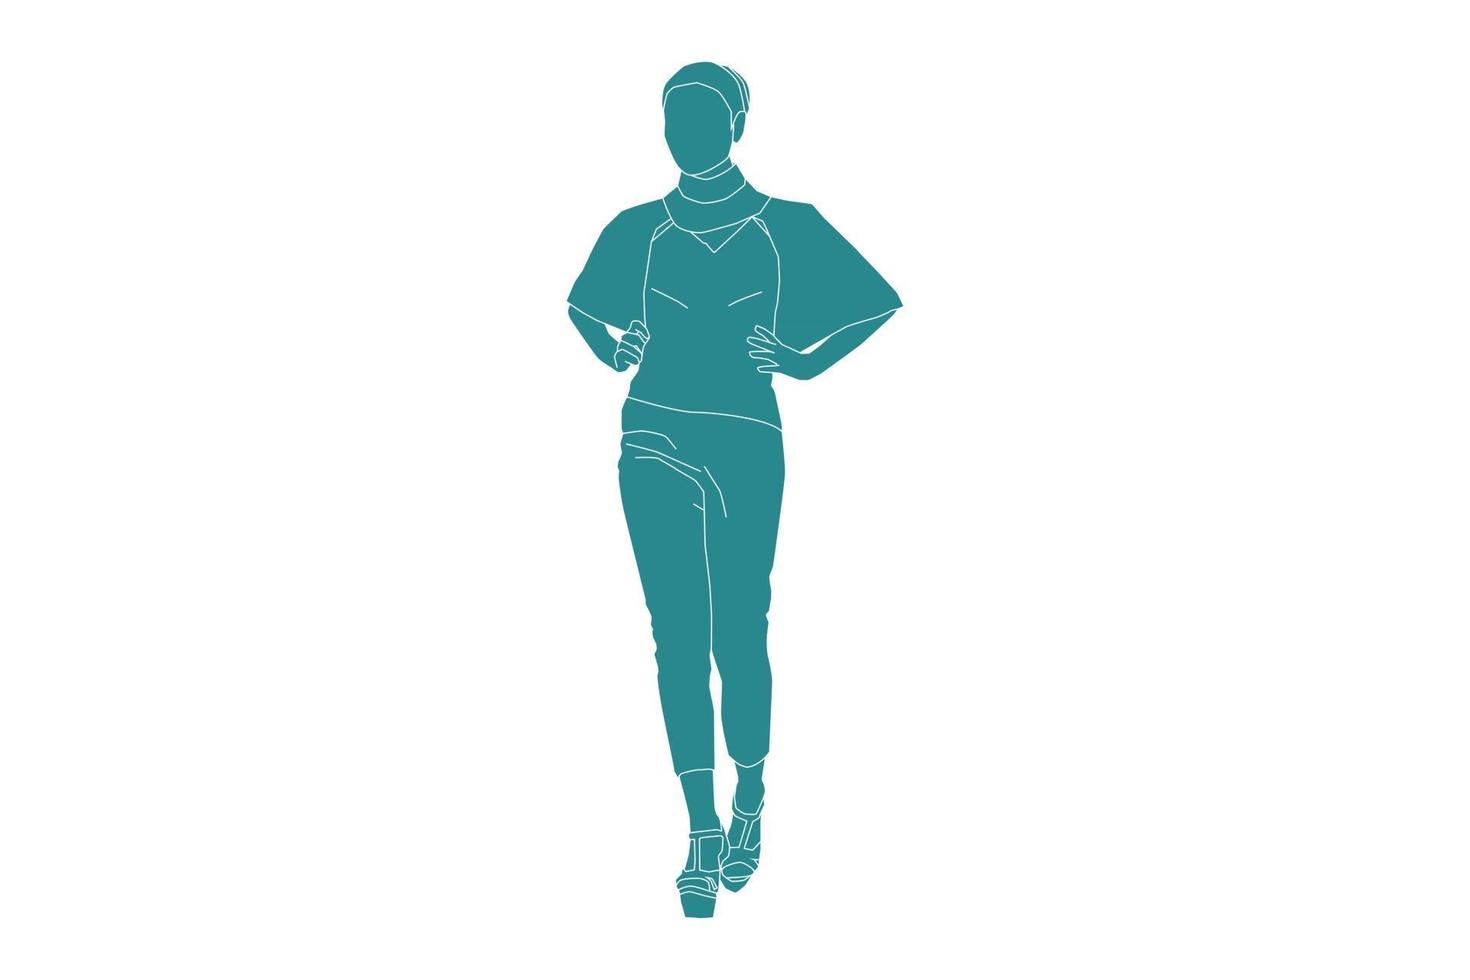 illustration vectorielle de femme à la mode posant, style plat avec contour vecteur